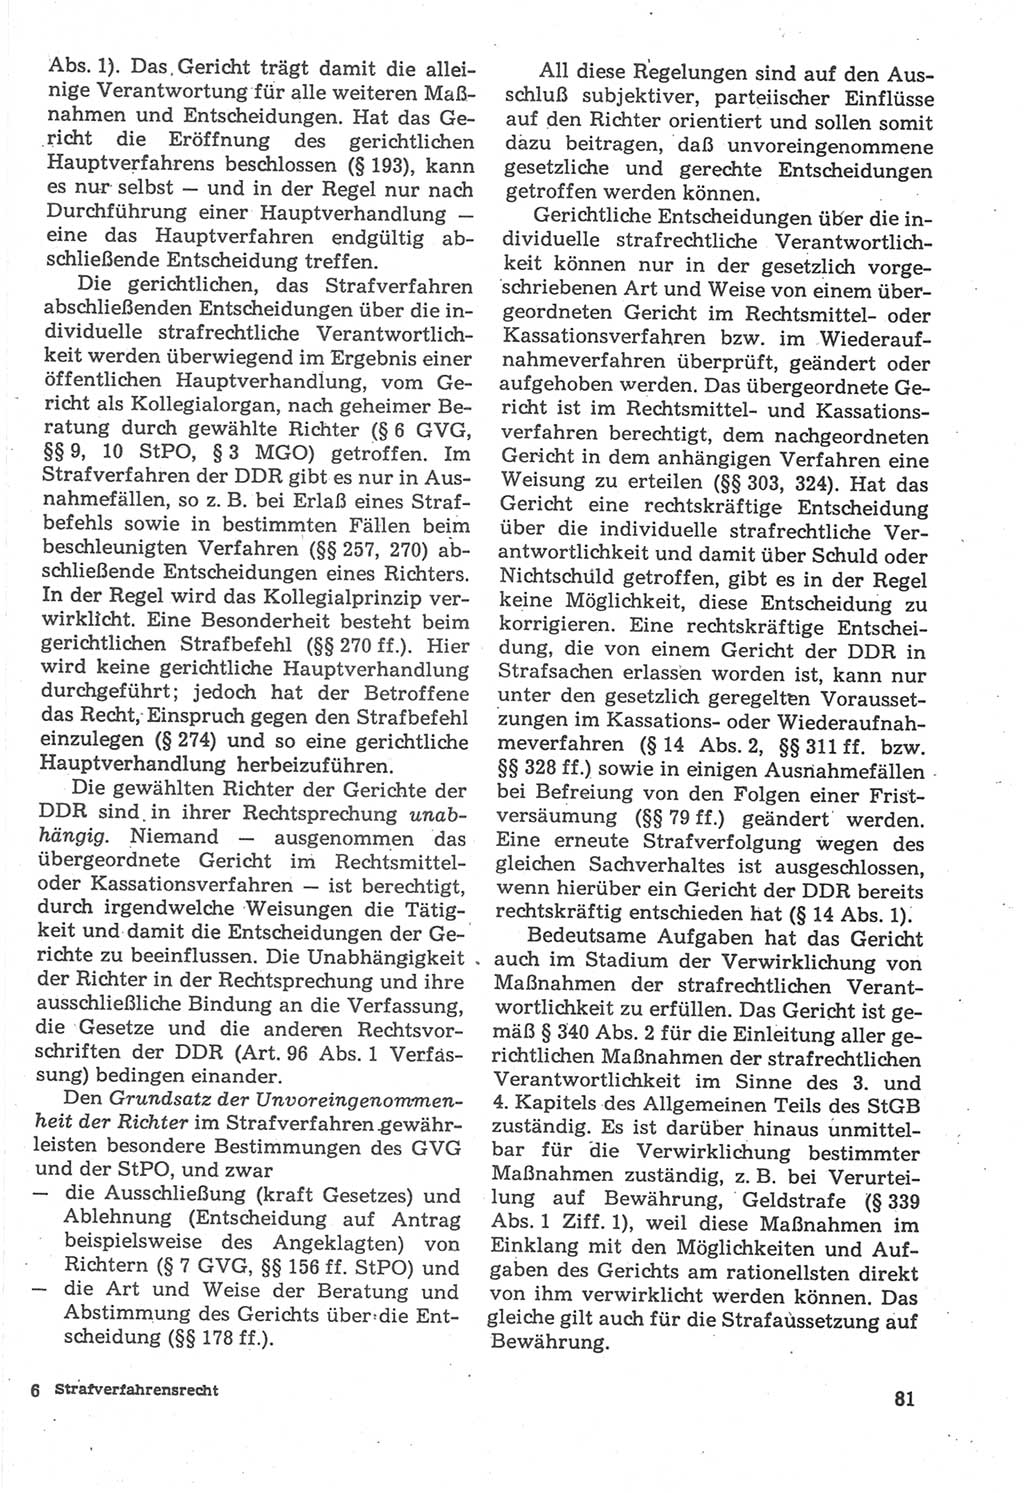 Strafverfahrensrecht [Deutsche Demokratische Republik (DDR)], Lehrbuch 1987, Seite 81 (Strafverf.-R. DDR Lb. 1987, S. 81)